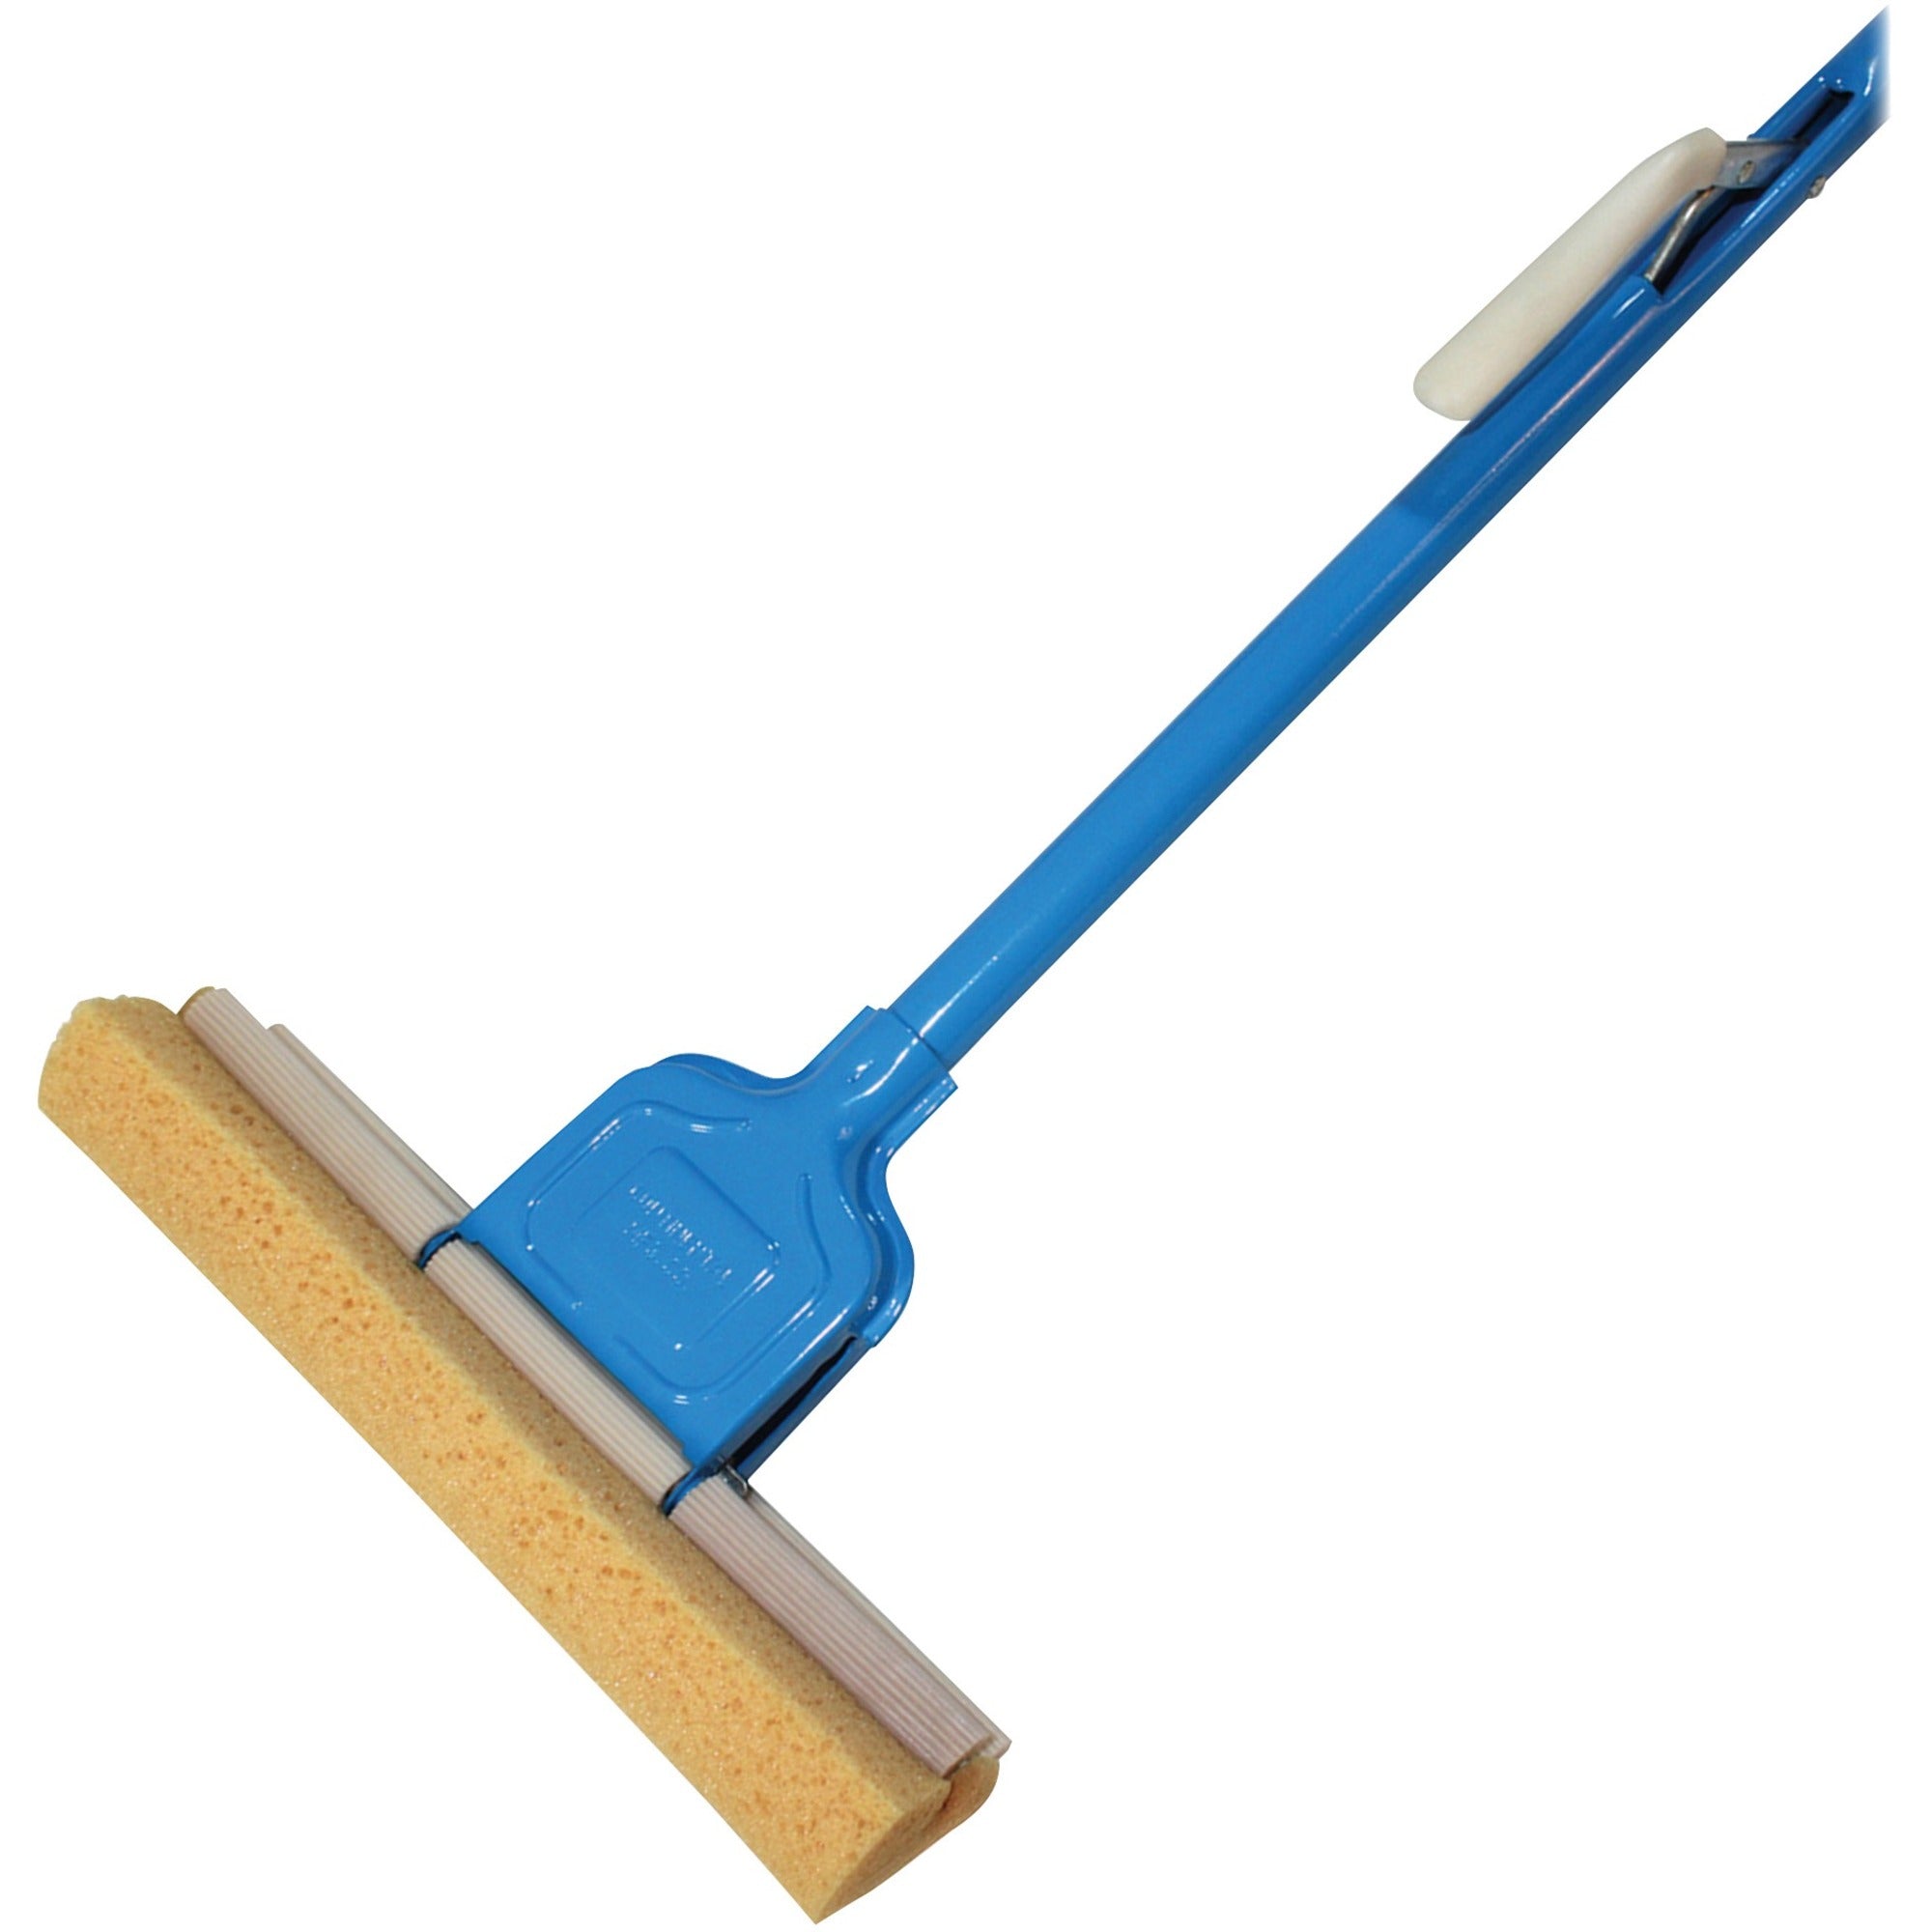 Genuine Joe Roller Sponge Mop - 12" Head - Absorbent, Durable, Sturdy - 1 Each - Blue - 